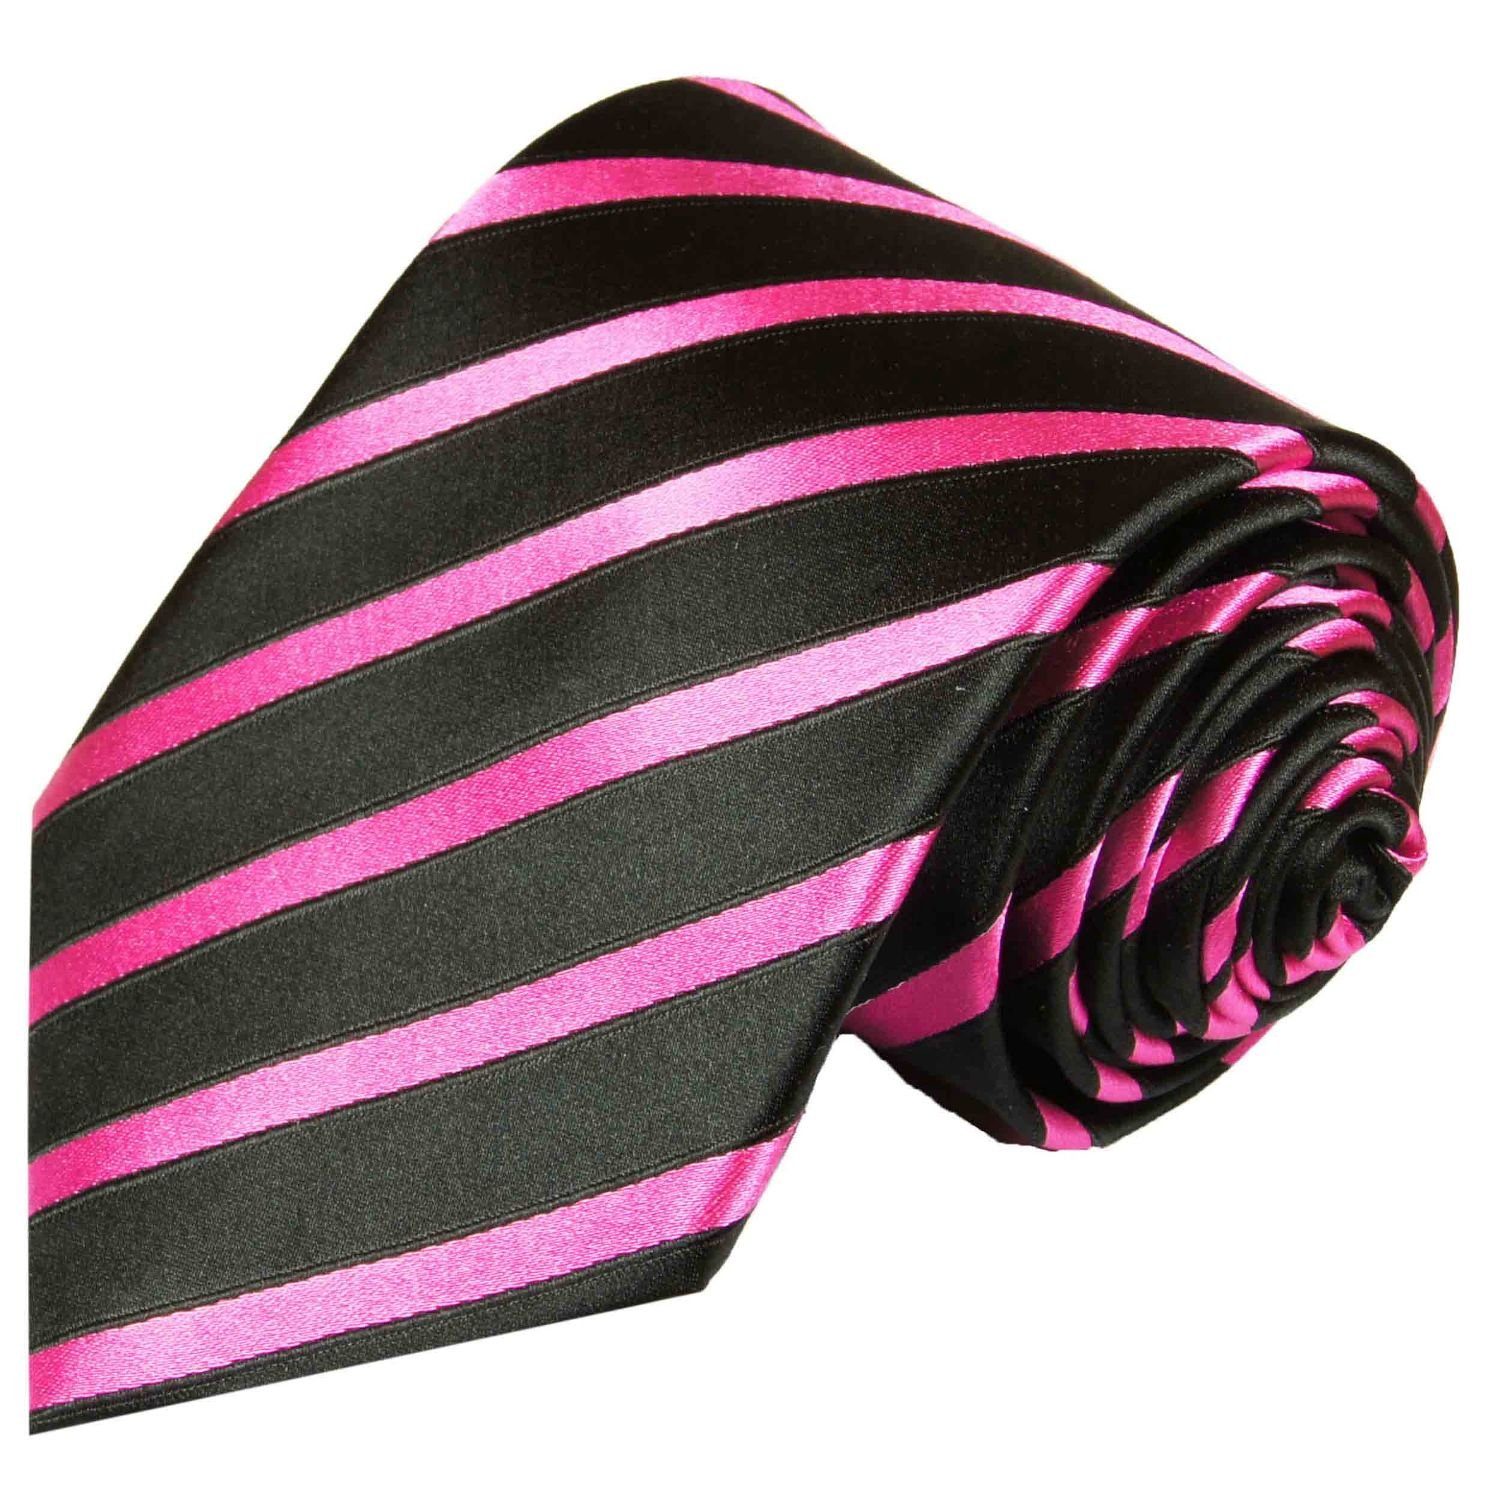 Paul Malone Krawatte Designer Seidenkrawatte Herren Schlips modern gestreift 100% Seide Breit (8cm), pink schwarz 463